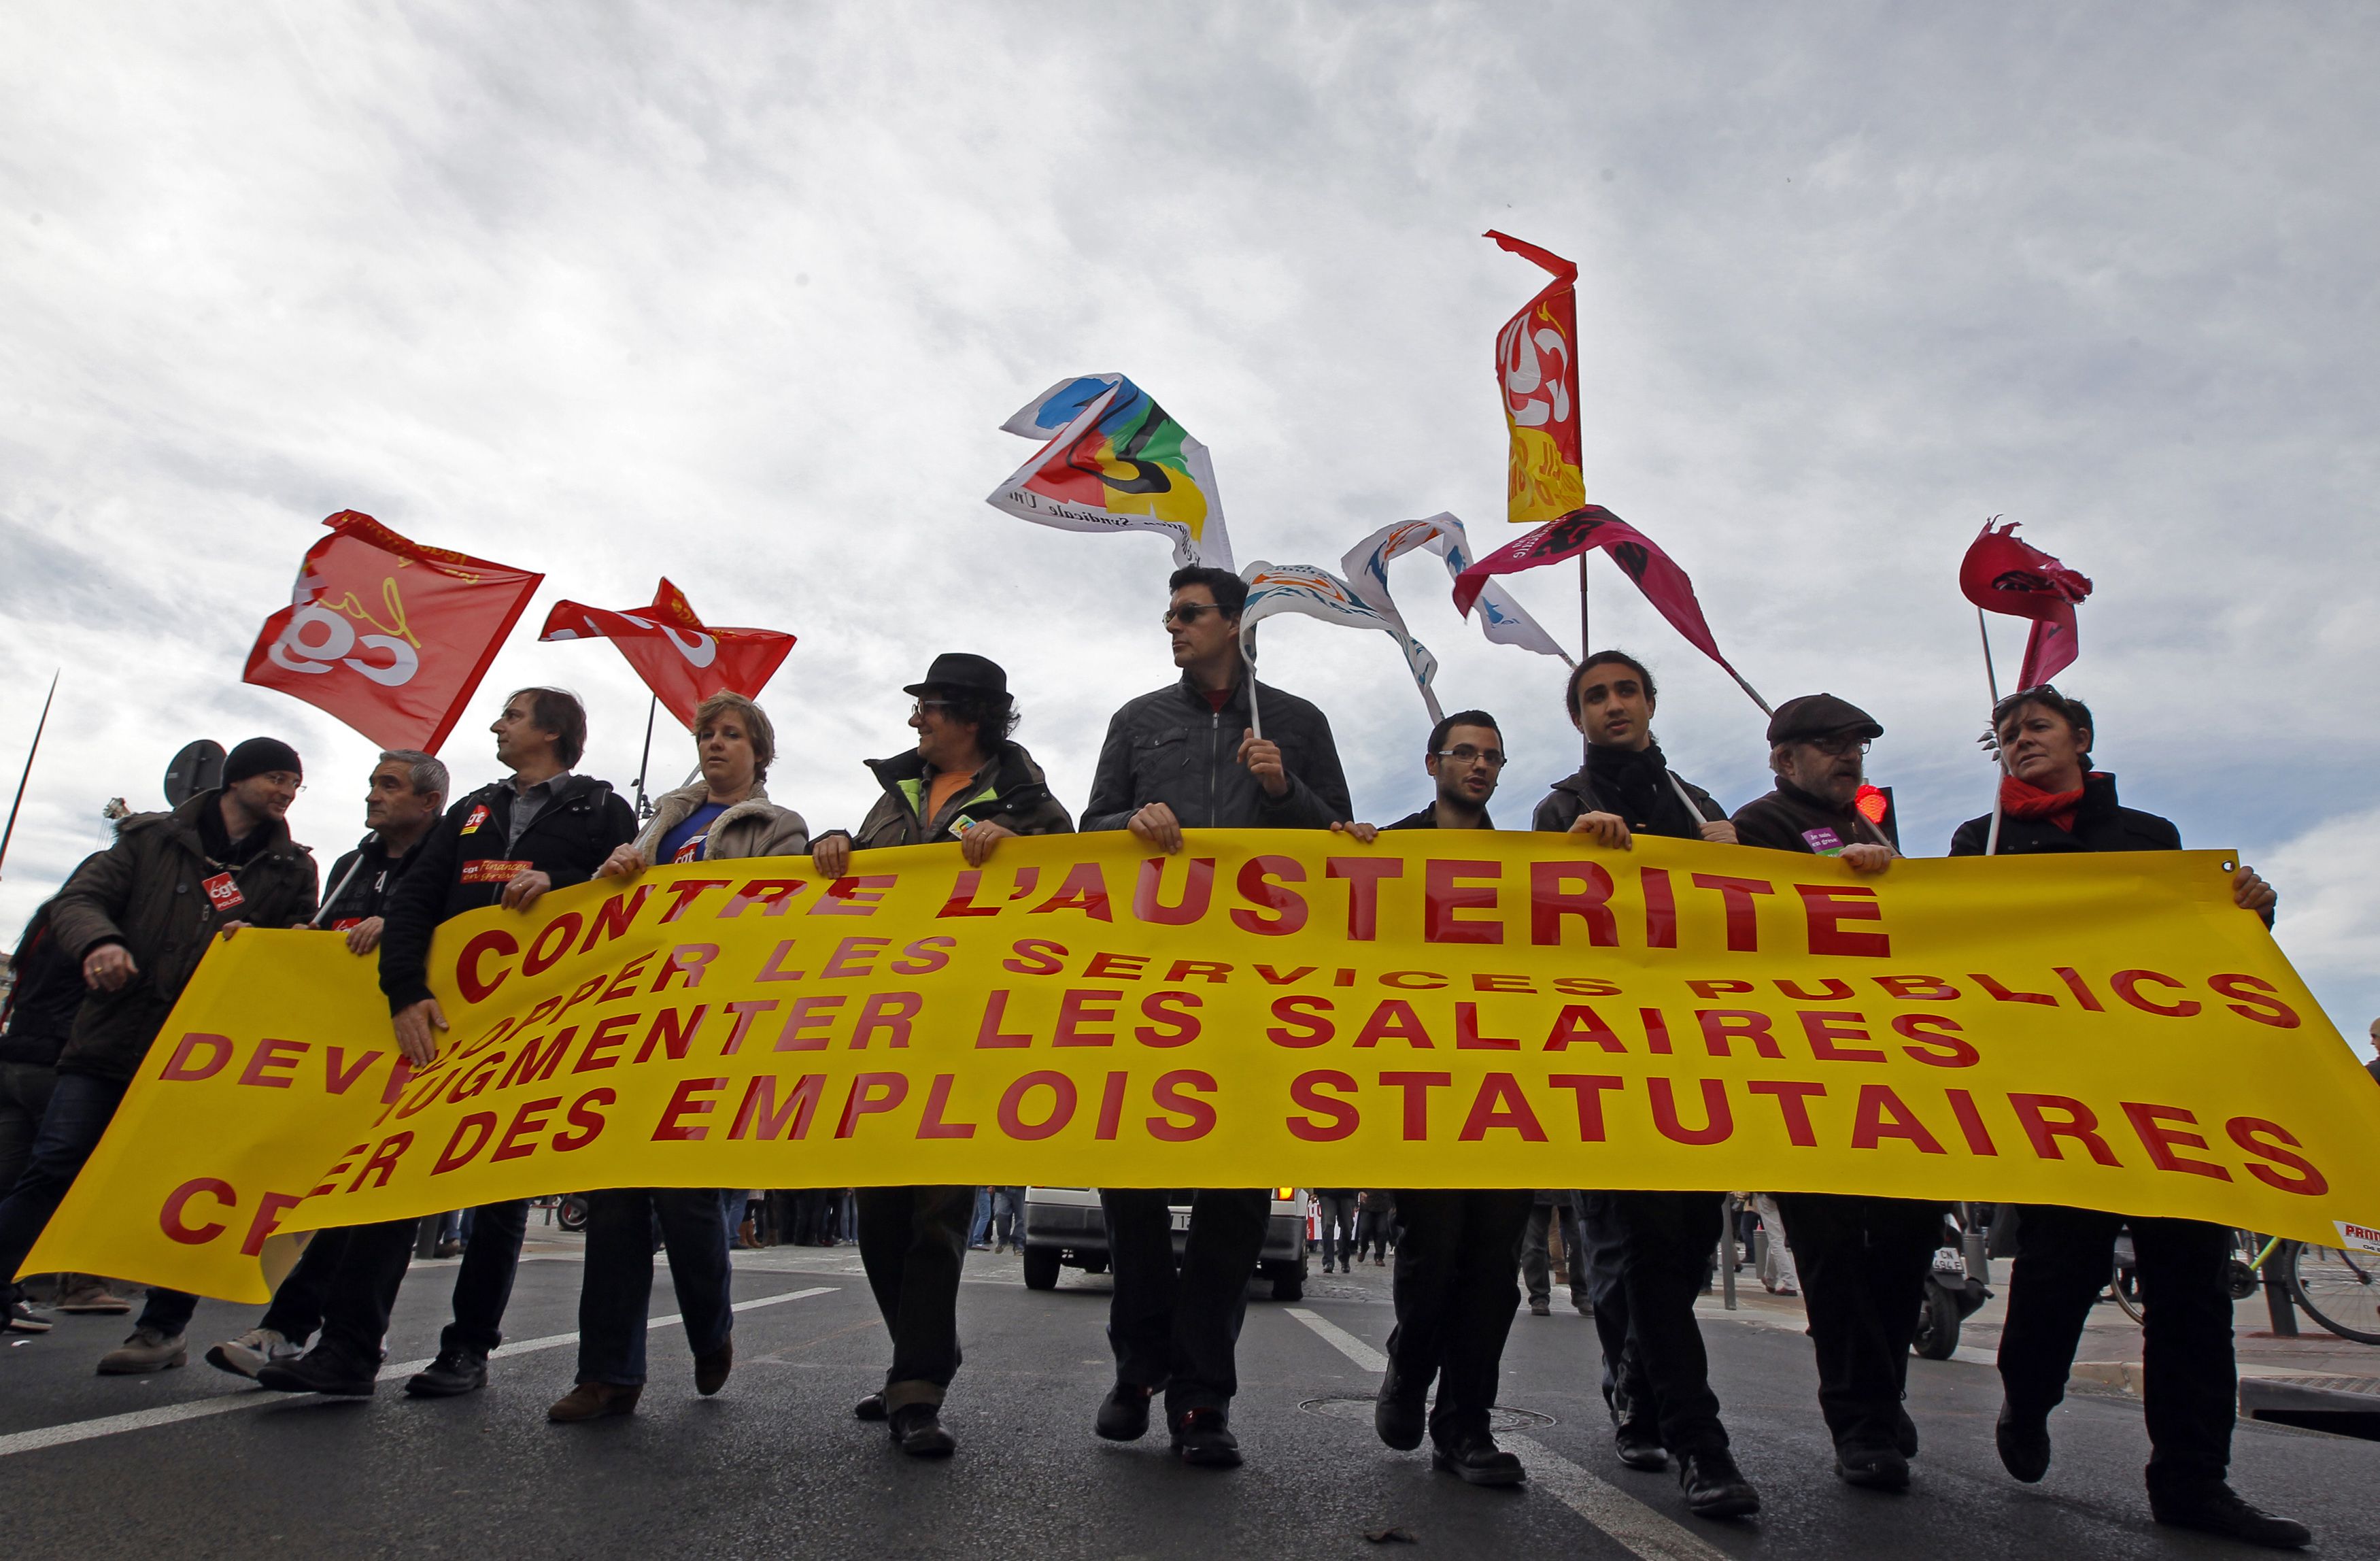 Μεγάλη κινητοποίηση των δημοσίων υπαλλήλων στη Γαλλία